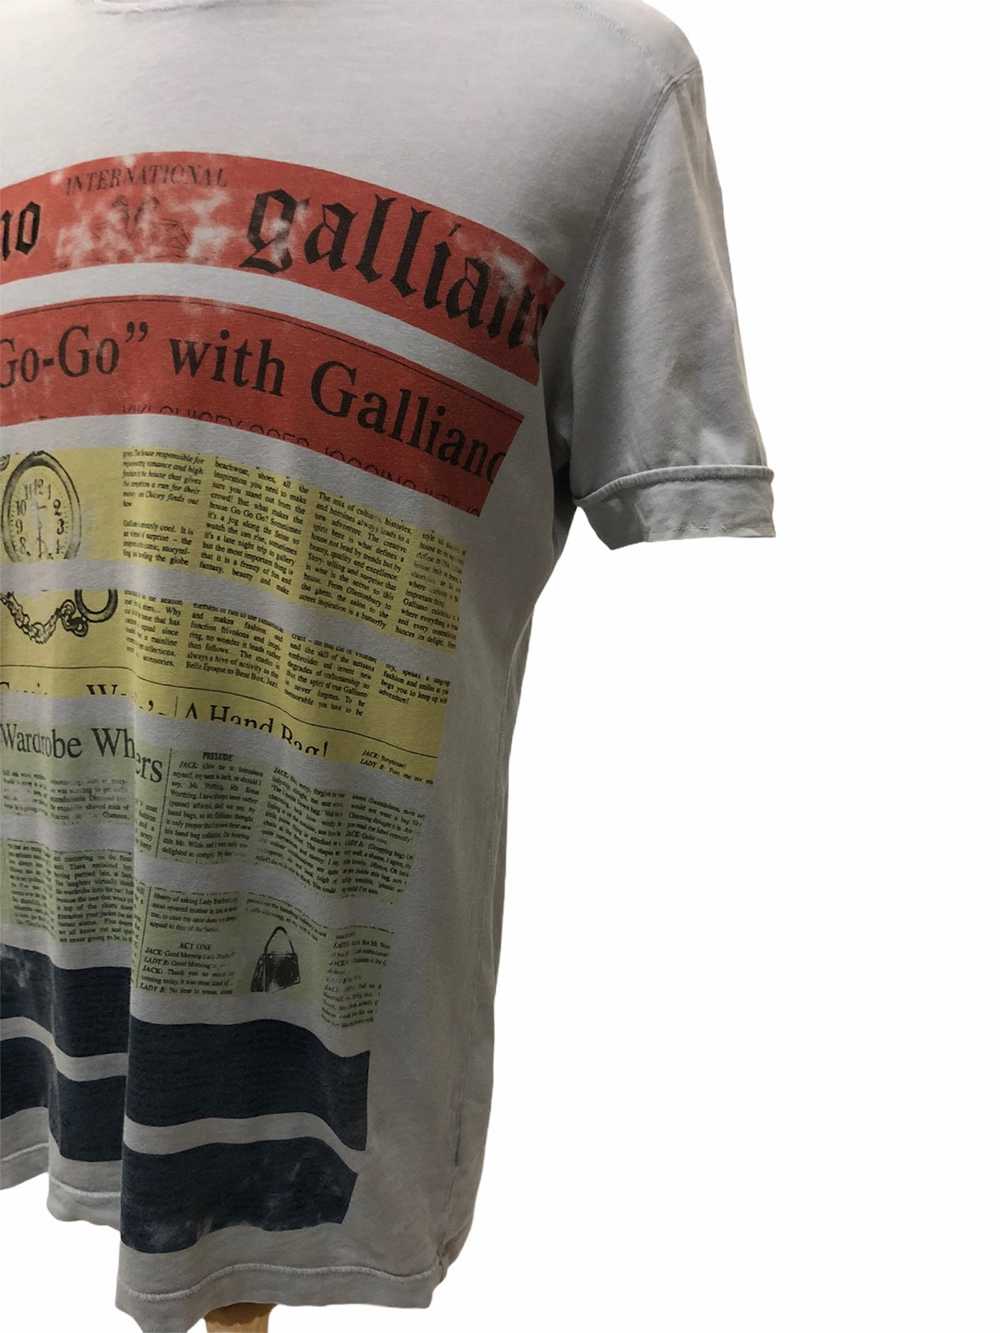 John Galliano John Galliano iconic shirt - image 3